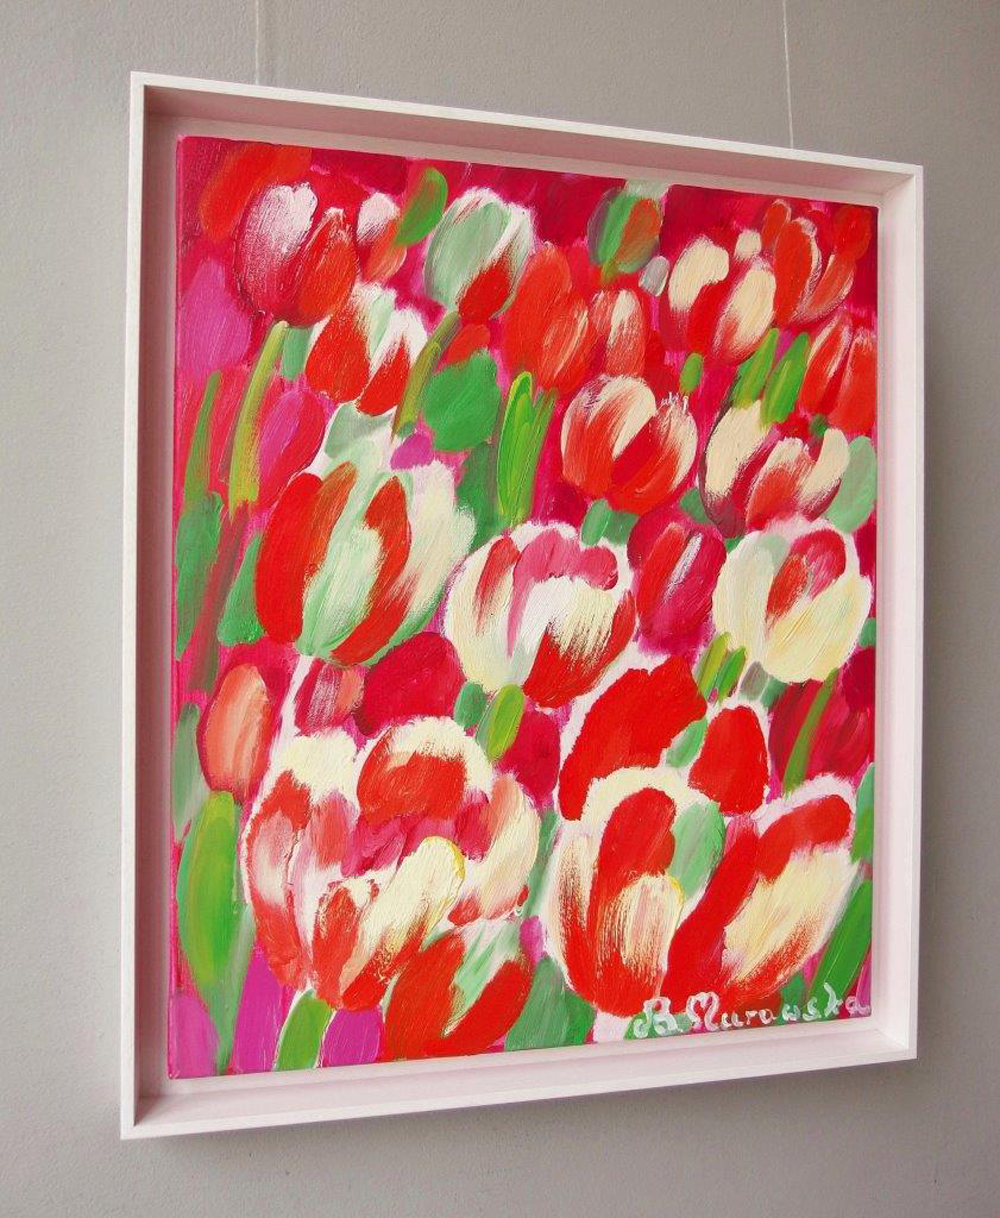 Beata Murawska - Virgin tulips (Oil on Canvas | Size: 56 x 66 cm | Price: 3800 PLN)